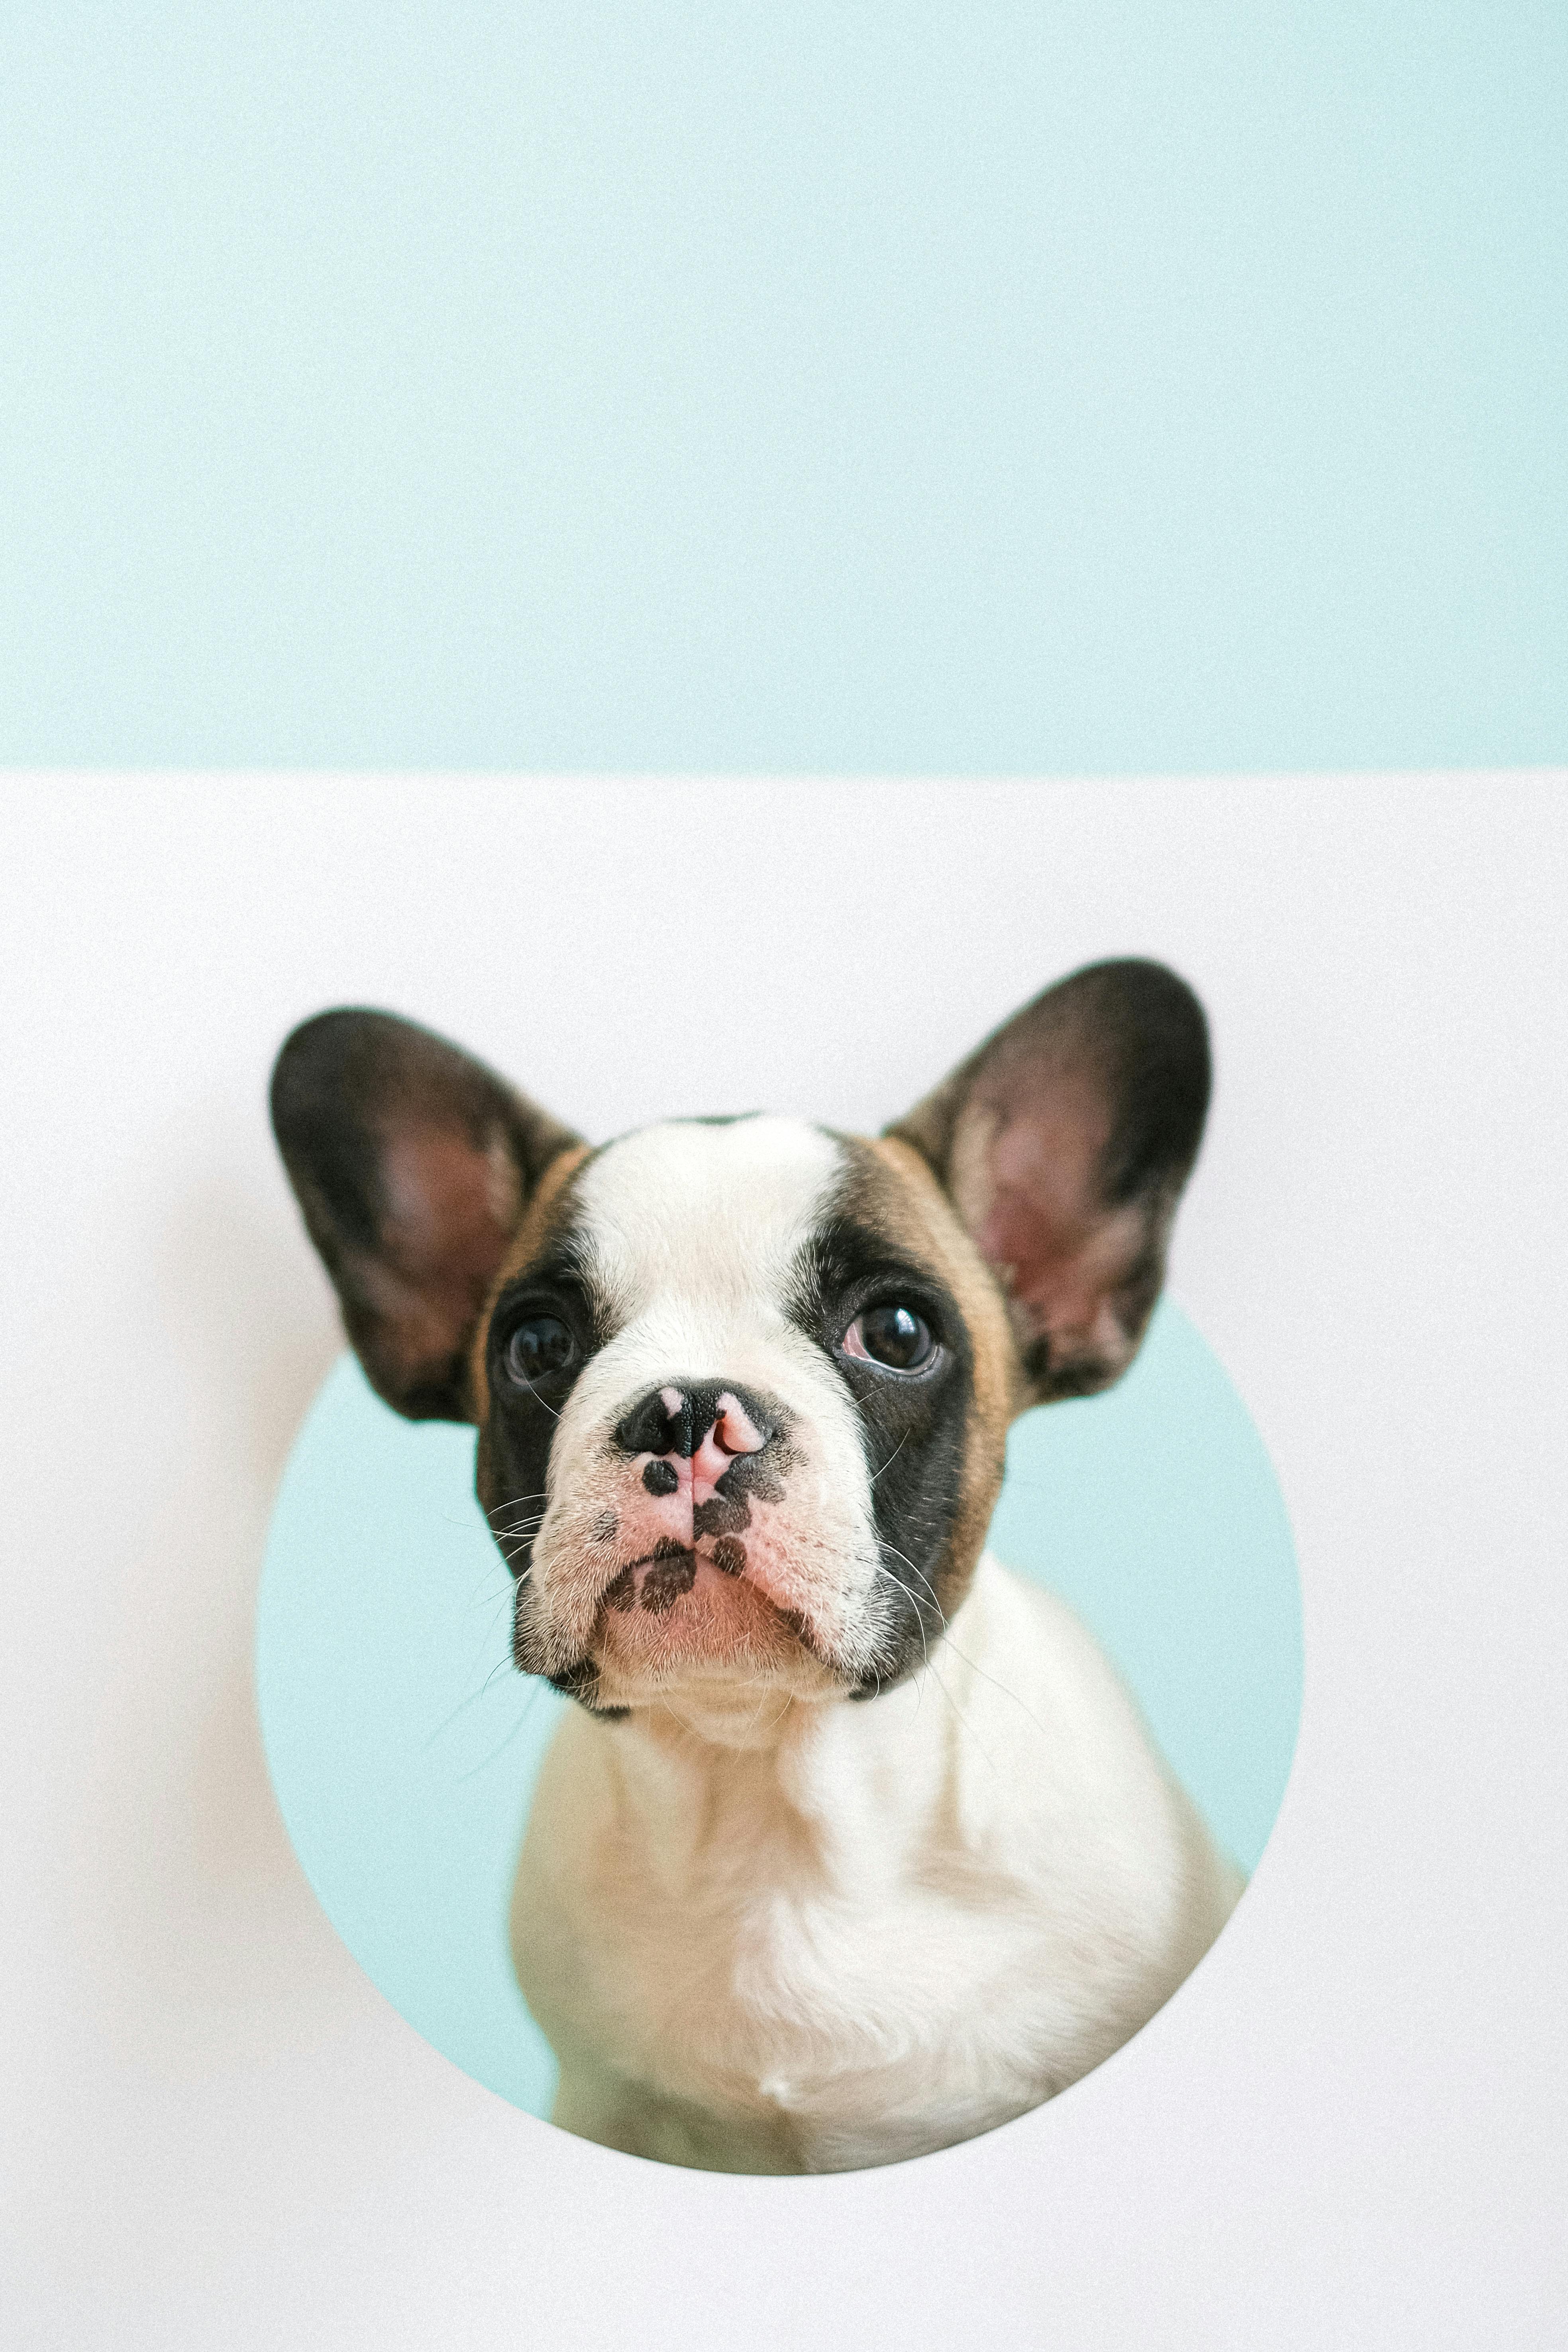 cute french bulldog puppy